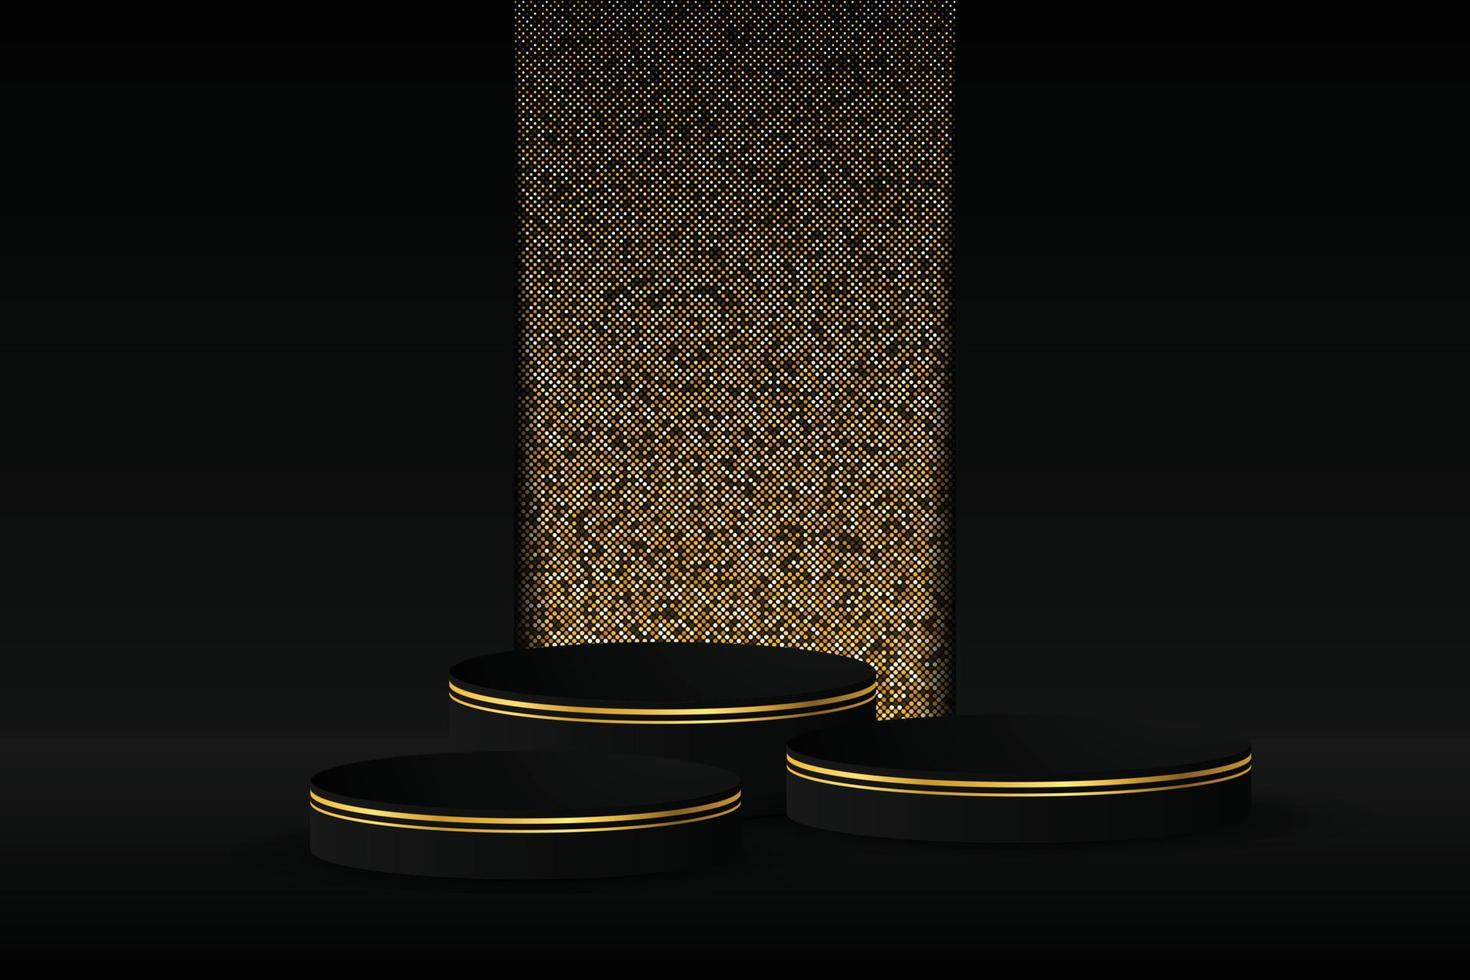 svart podium och modern guldkant med en glittrig guldbakgrund. abstrakt vektorillustration som visar en 3D-form för att placera en produkt med kopieringsutrymme. vektor